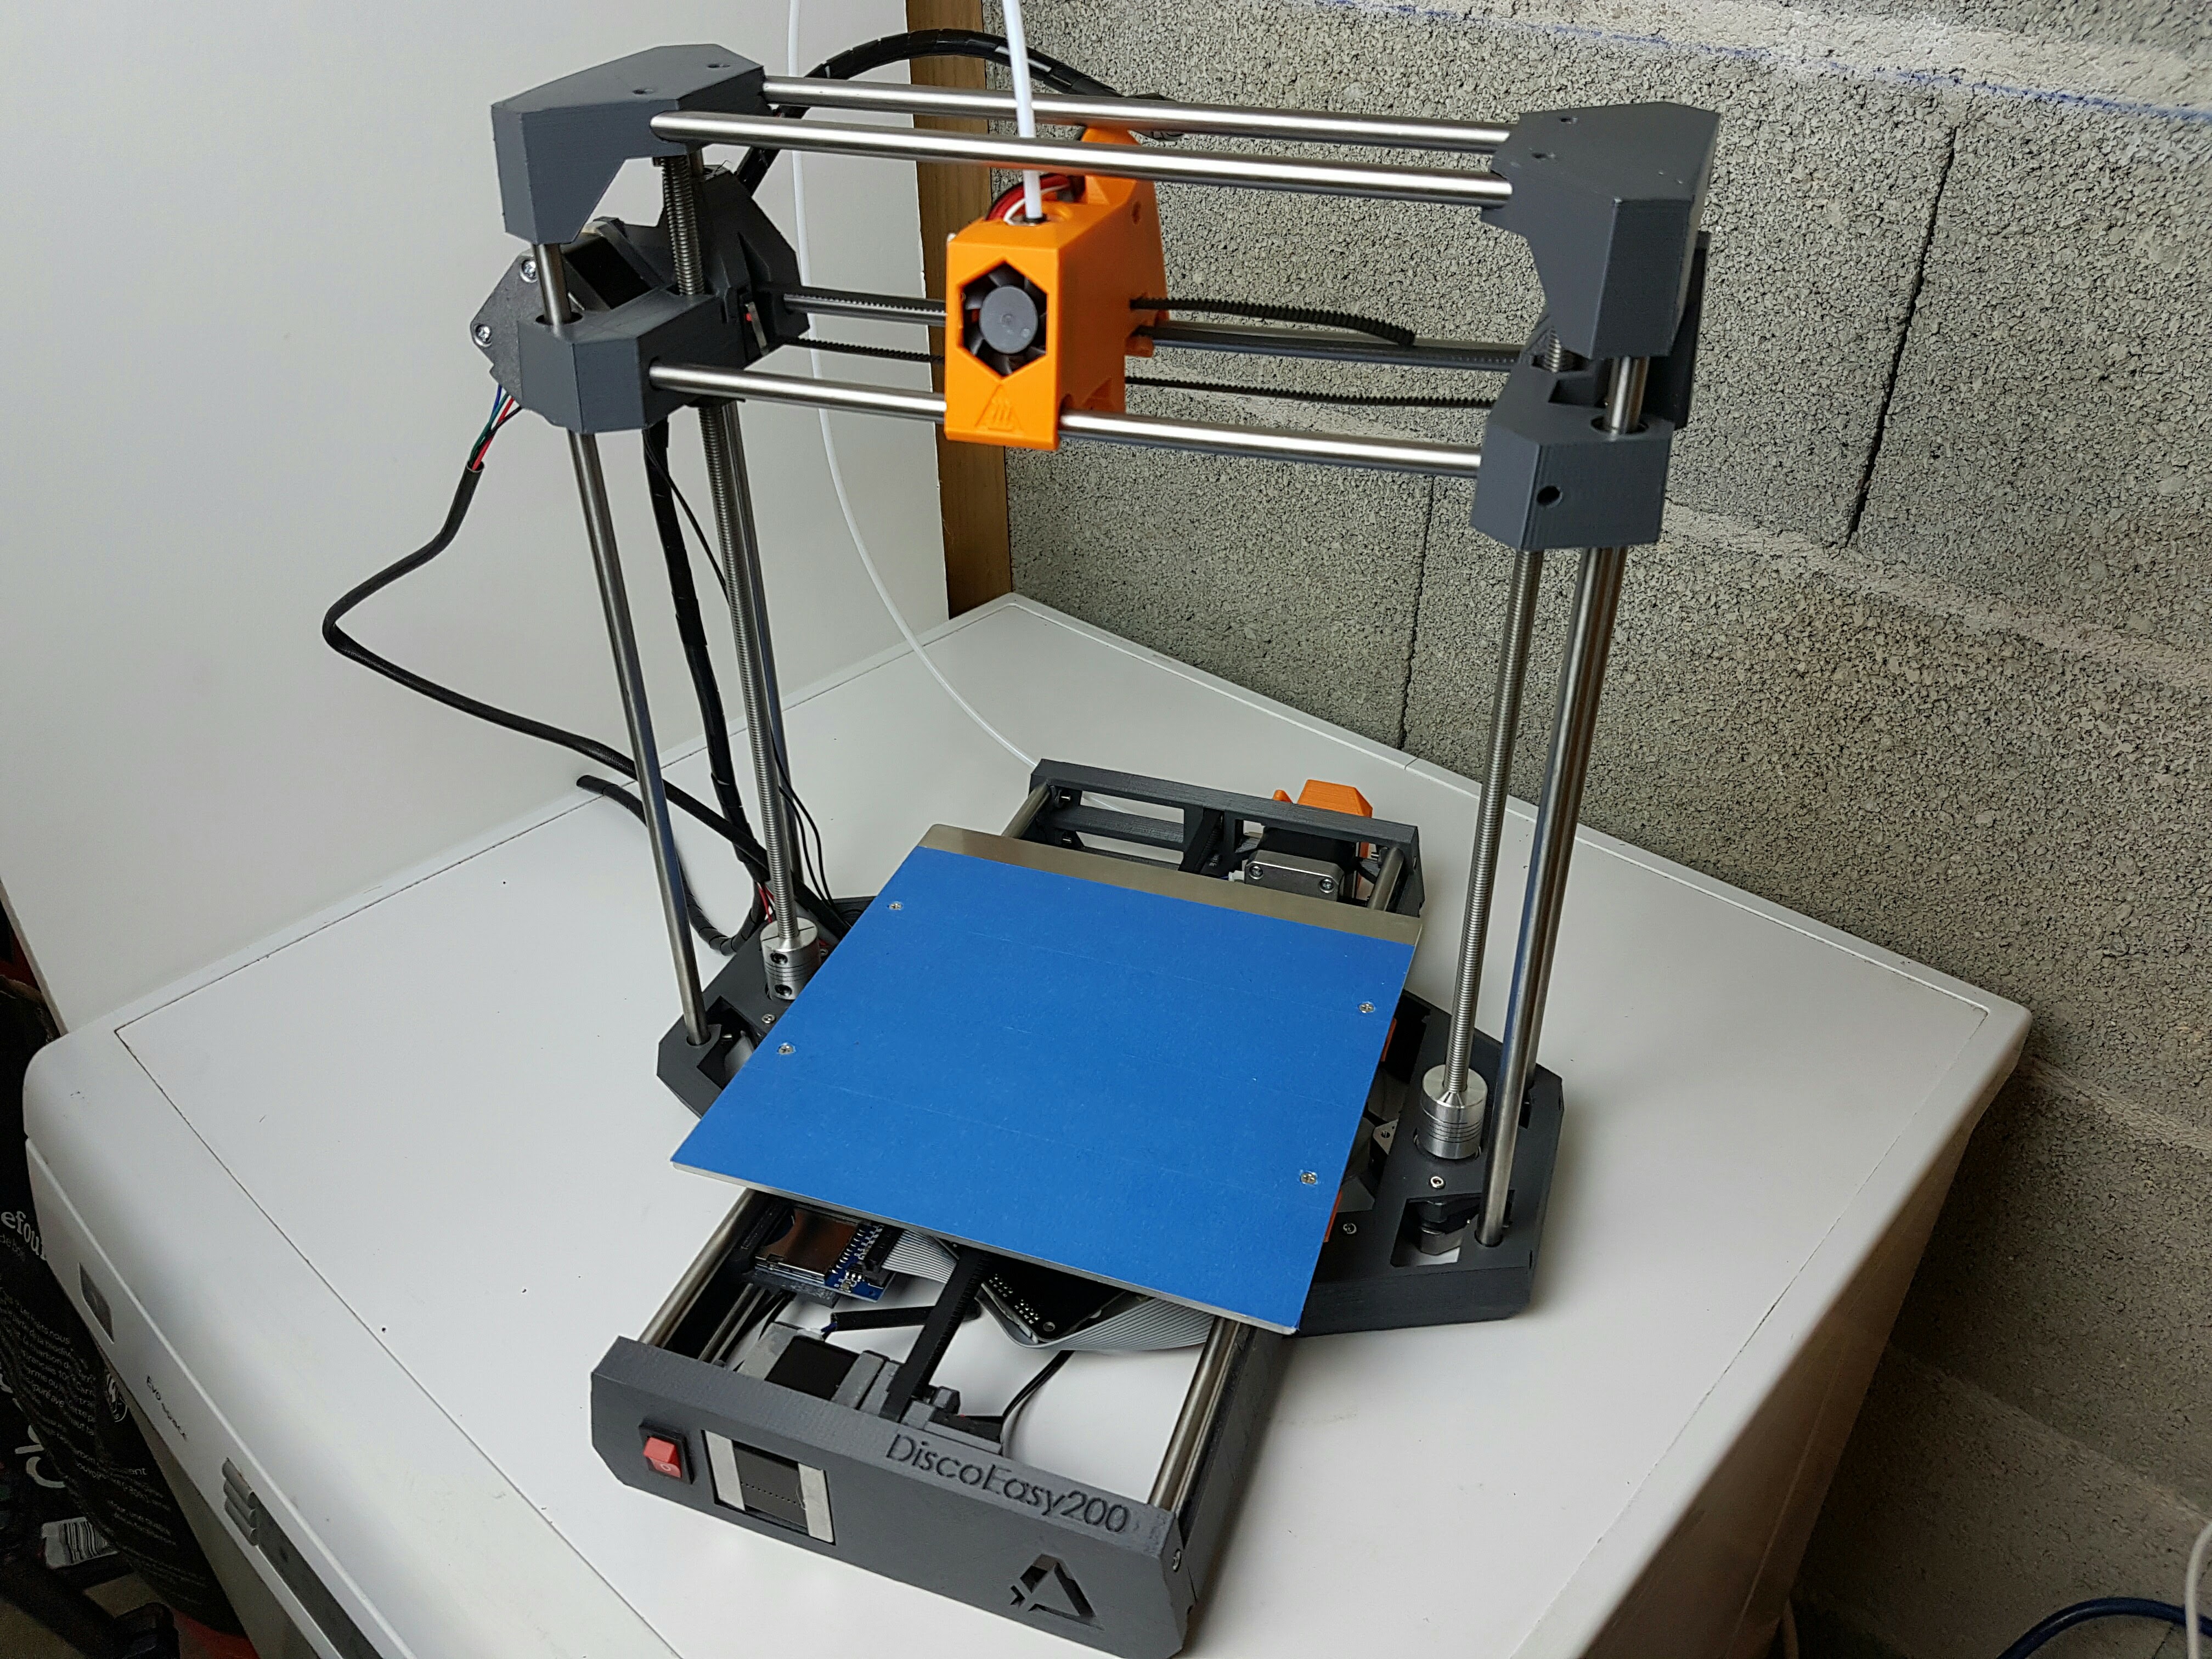 Montage de l’imprimante 3D DiscoEasy 200 de Dagoma